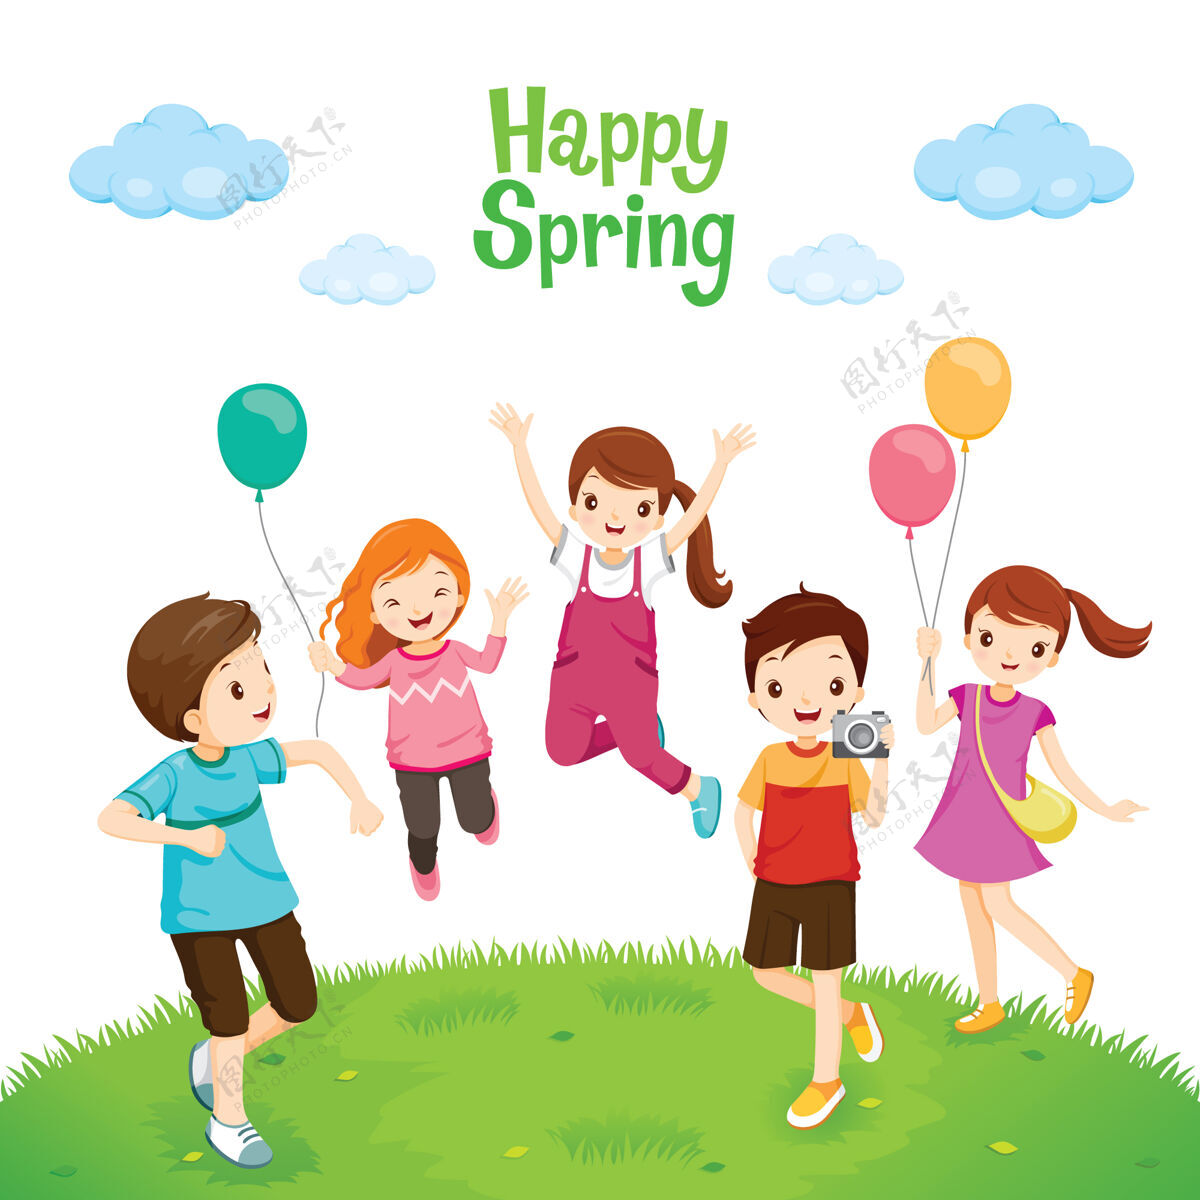 孩子快乐的孩子们放松 在草坪上跳跃 快乐的春天男孩小草卡通